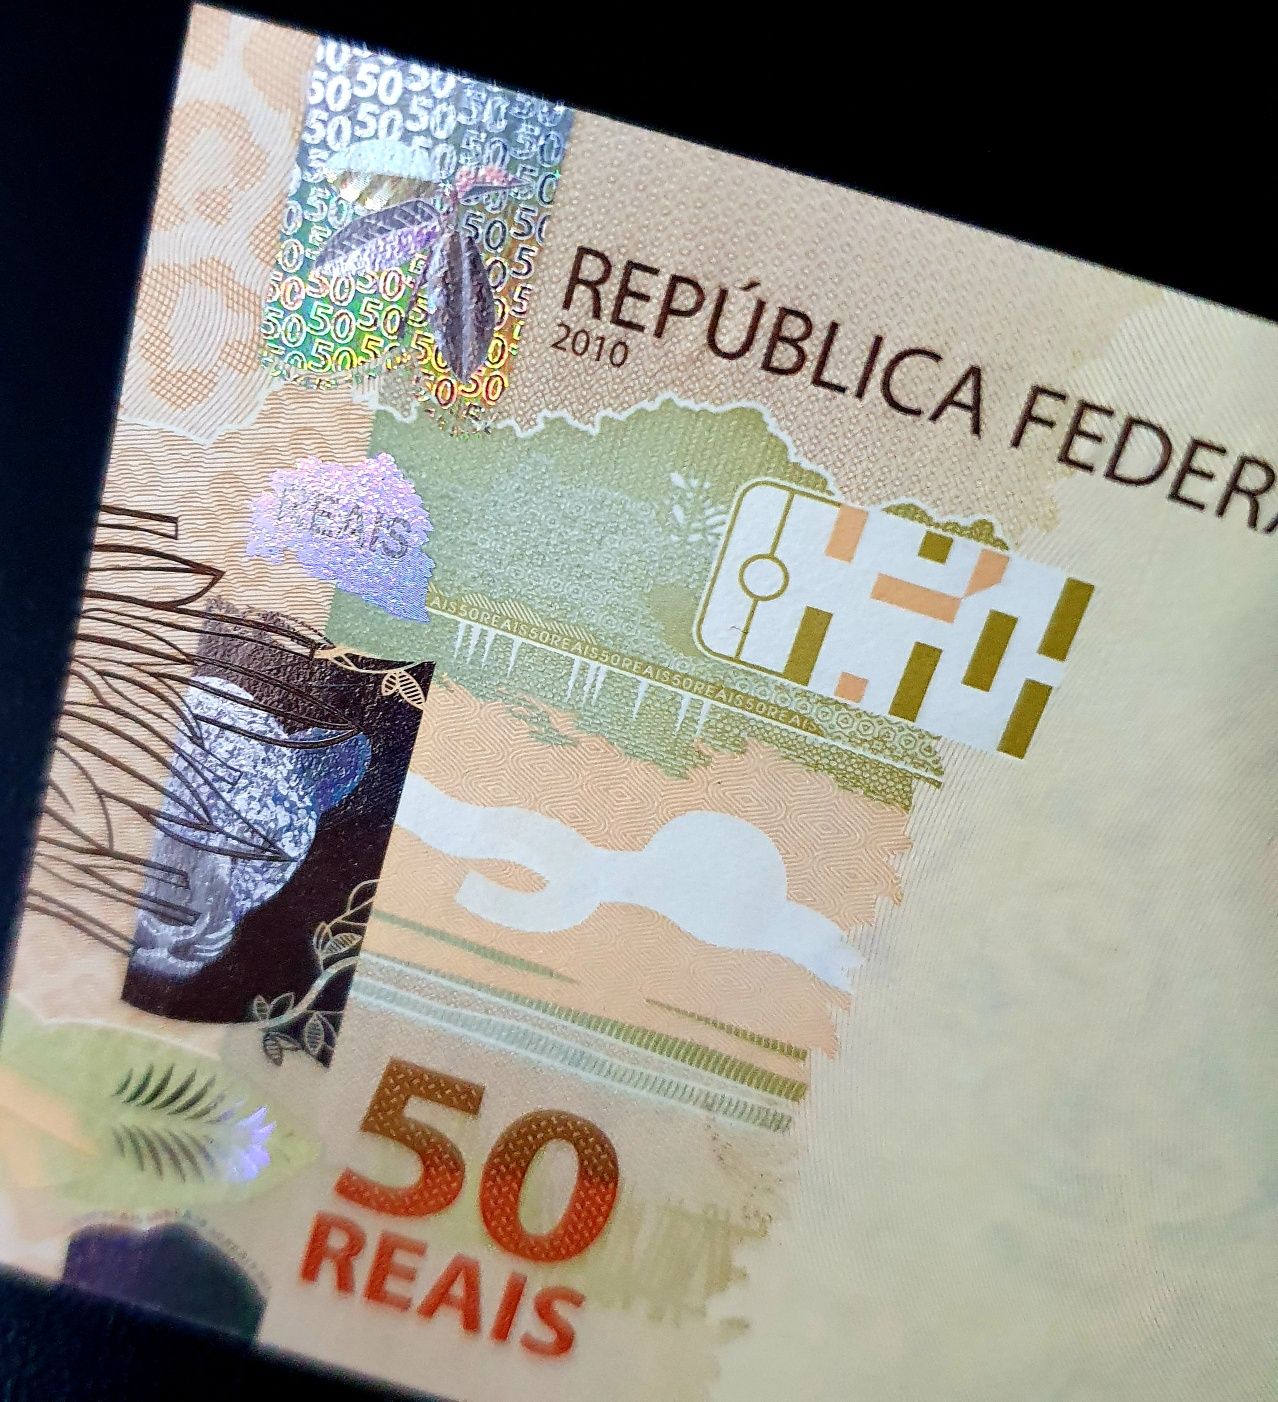 Brazylia 50 rials UNC śliczny banknot